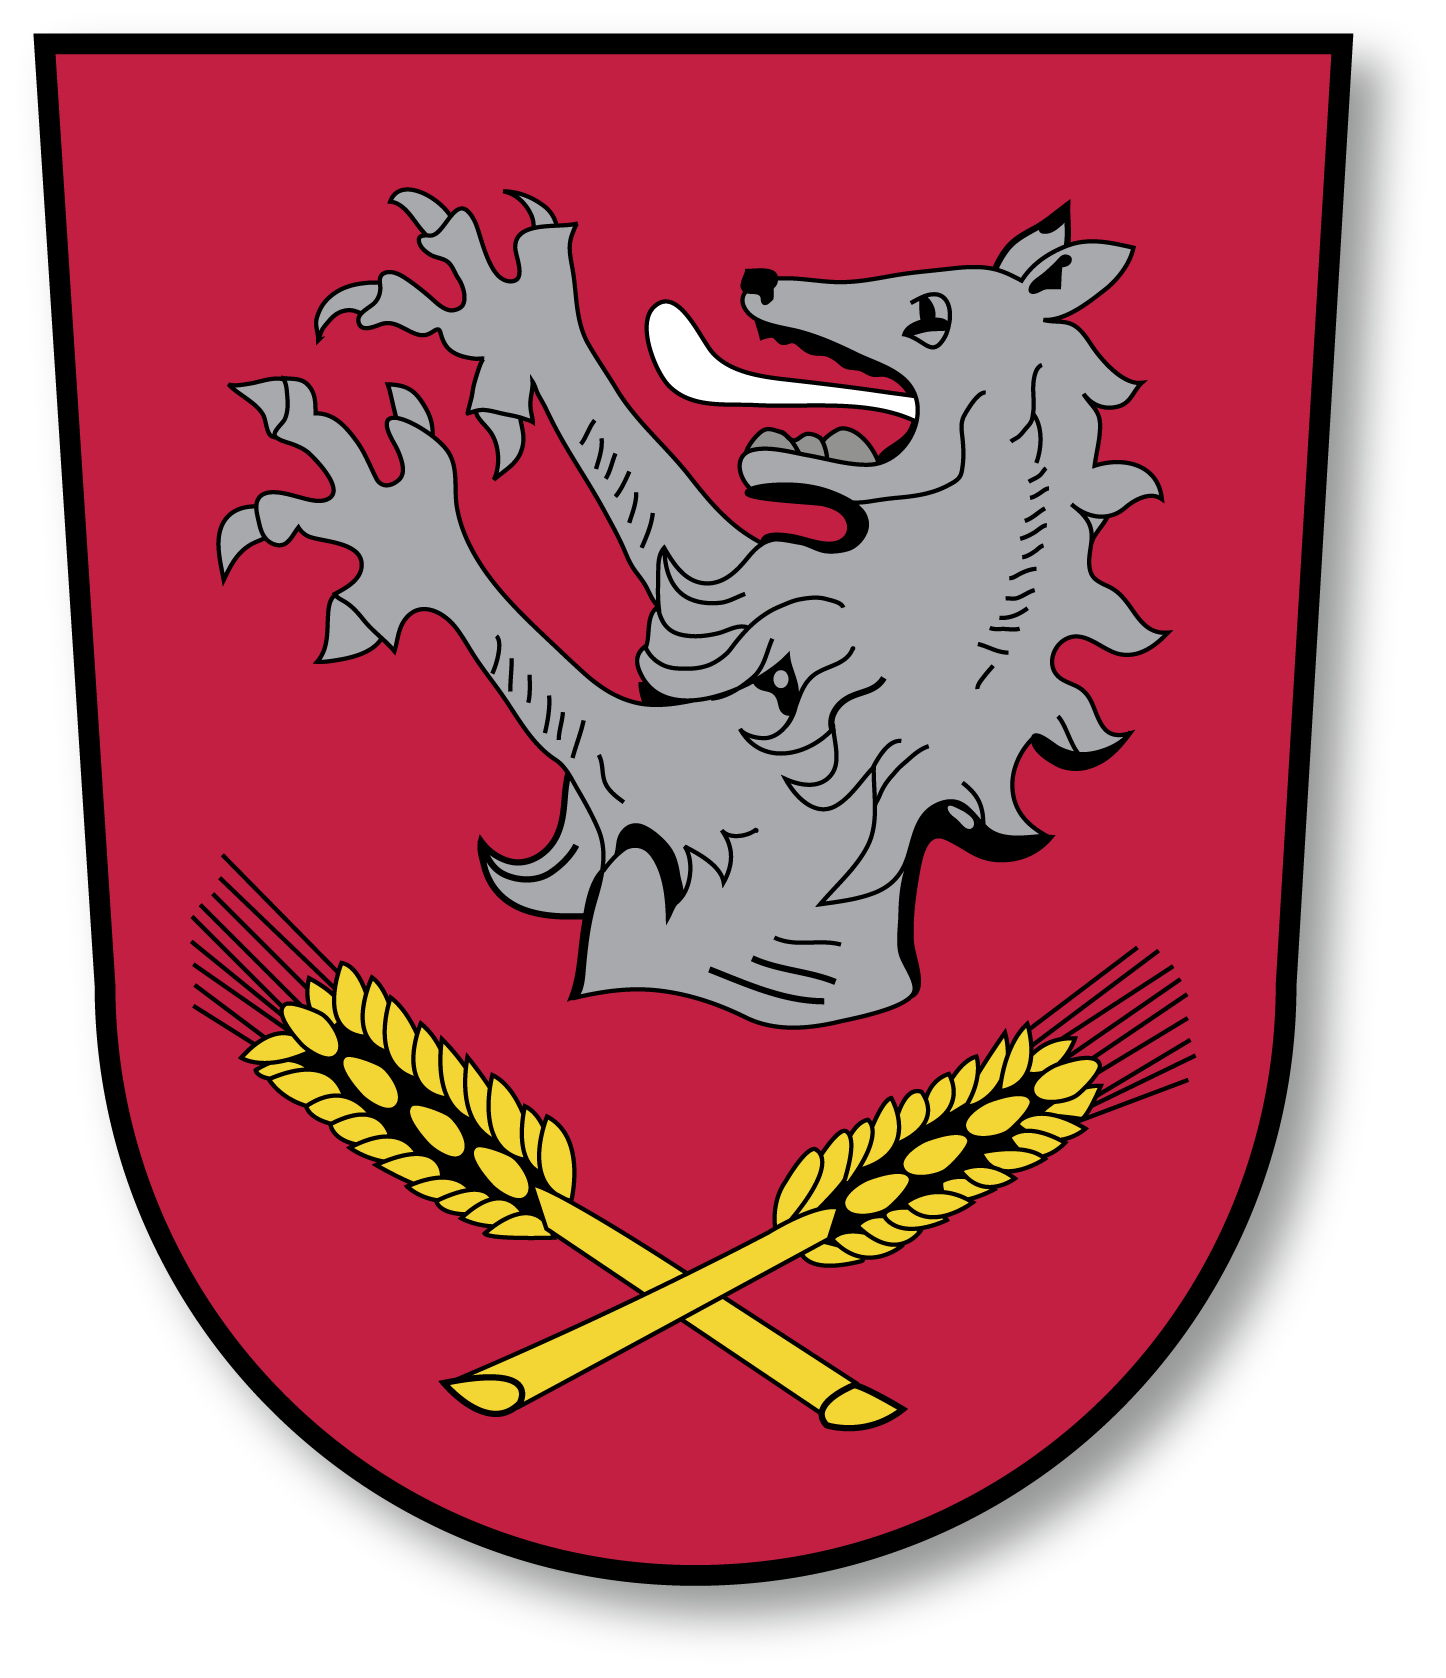 Wappen Gerolsbach